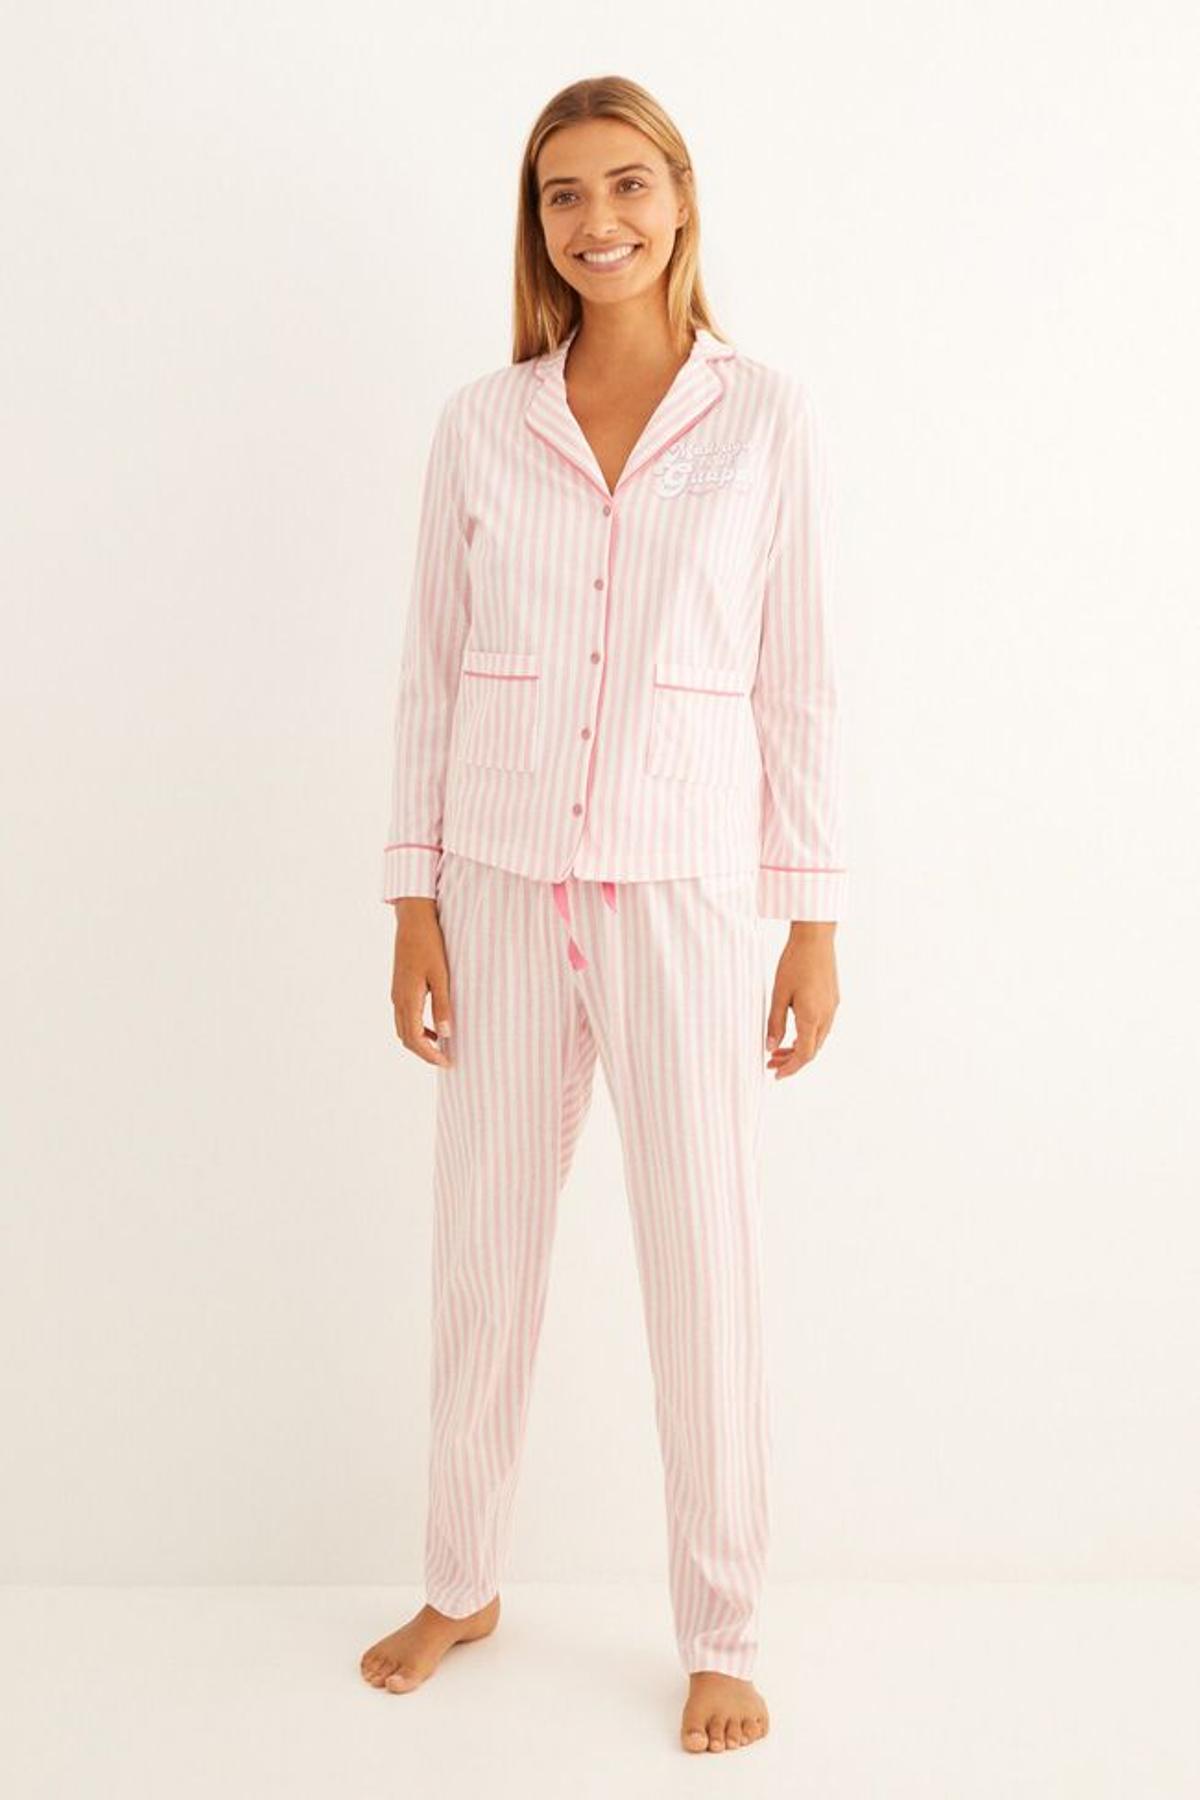 Pijamas cómodos (y bonitos) para sentirte guapa también en casa - Woman